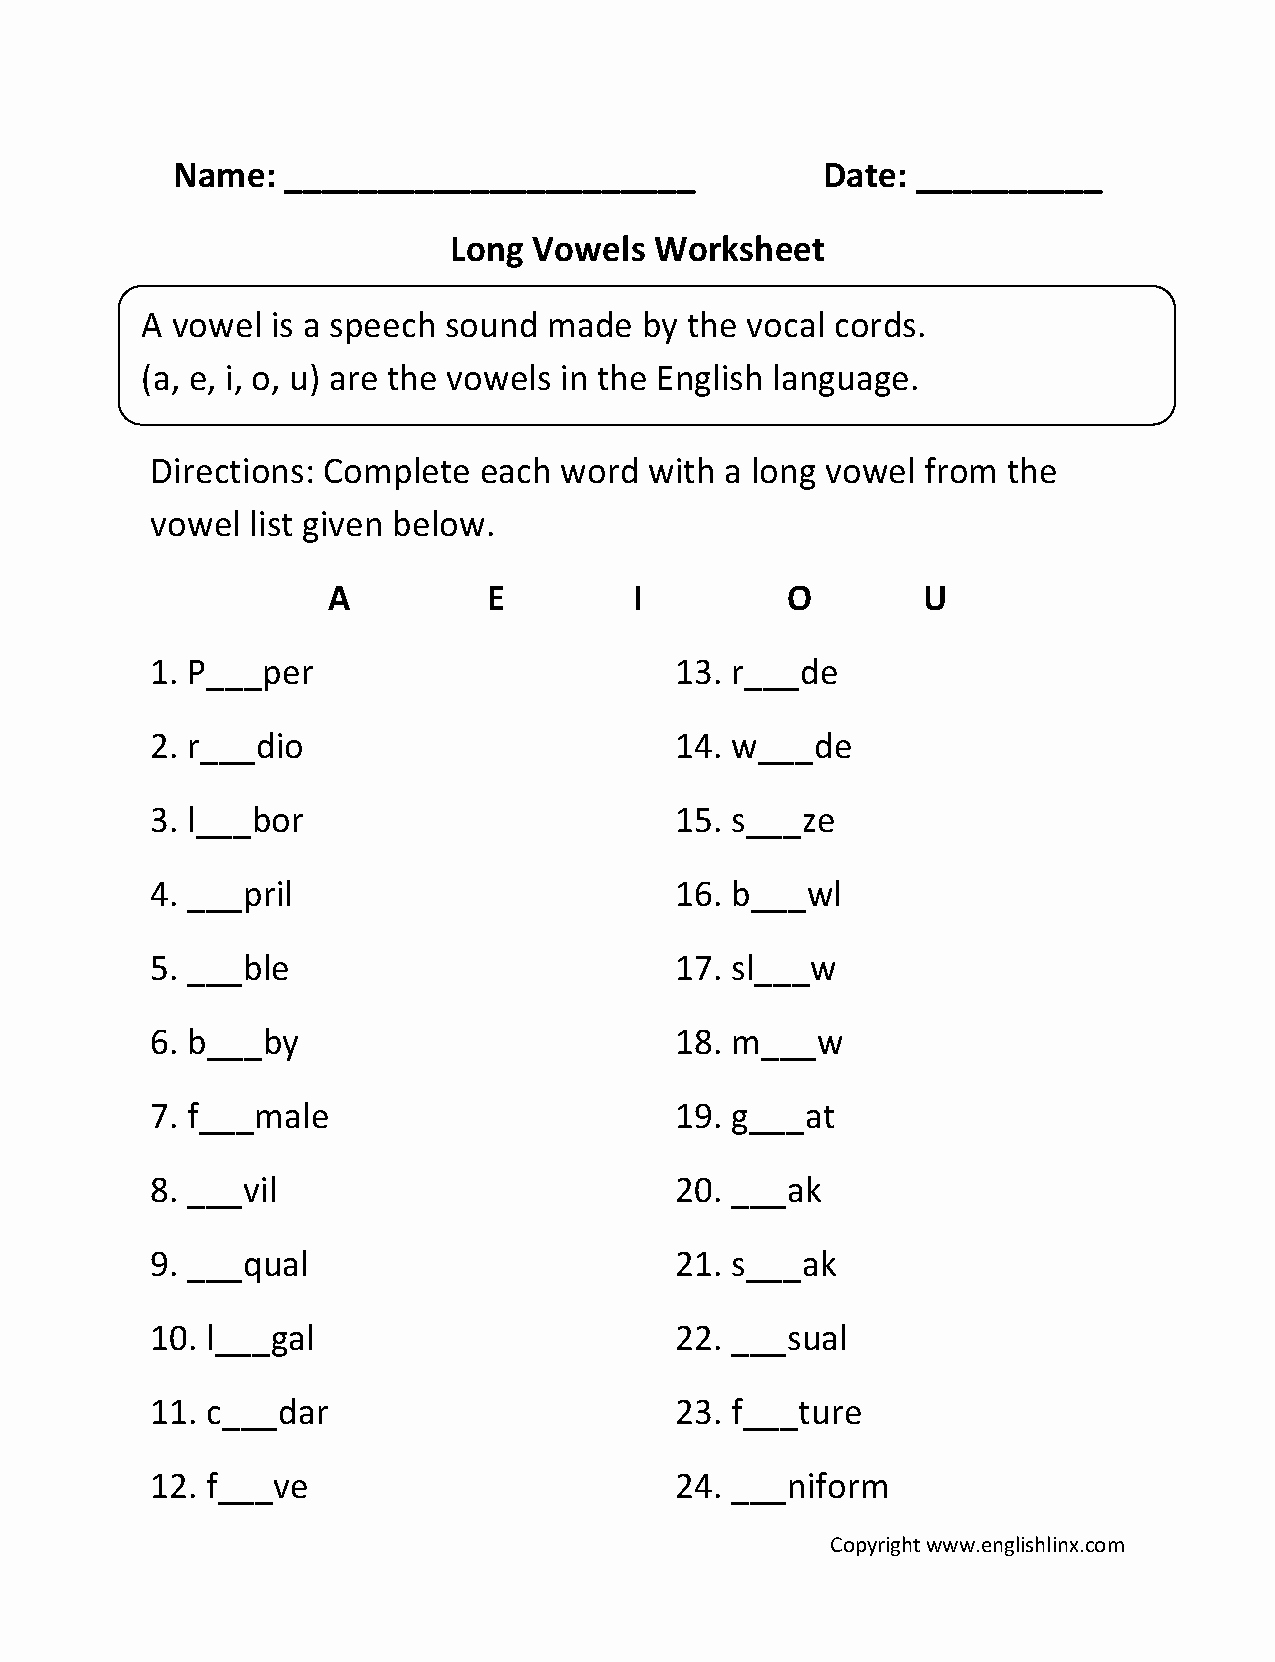 Short and Long Vowels Worksheet Unique Vowel Worksheets